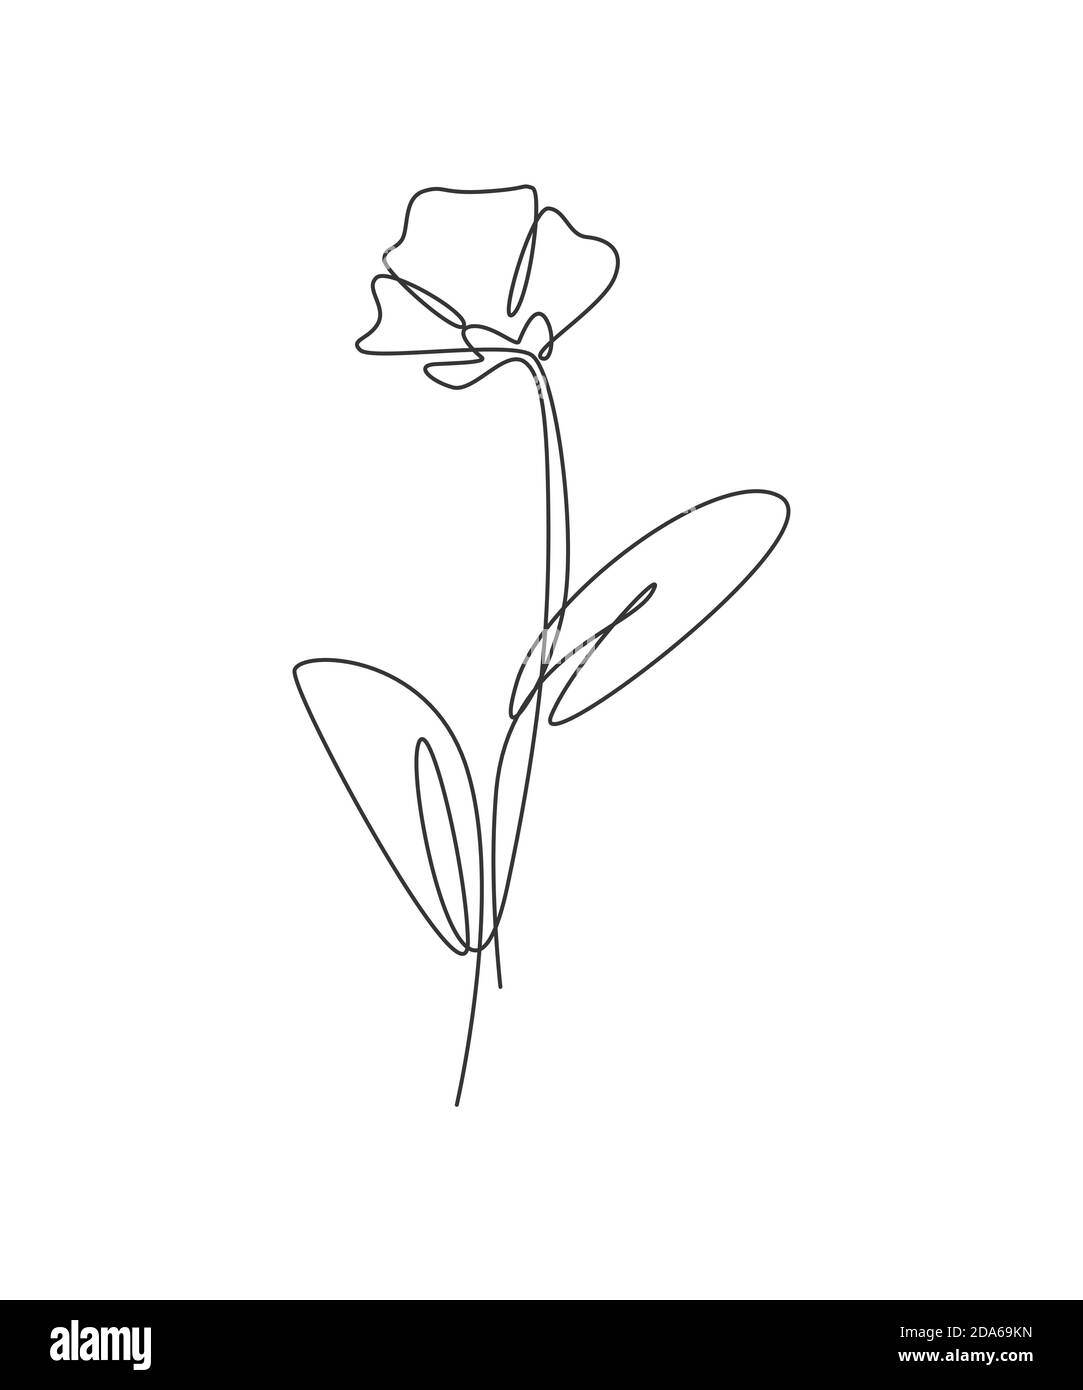 Une ligne continue dessinant une belle fleur de pavot abstraite. Concept naturel de beauté fraîche minimale. Décoration murale maison, affiche, sac fourre-tout, imprimé tissu Illustration de Vecteur